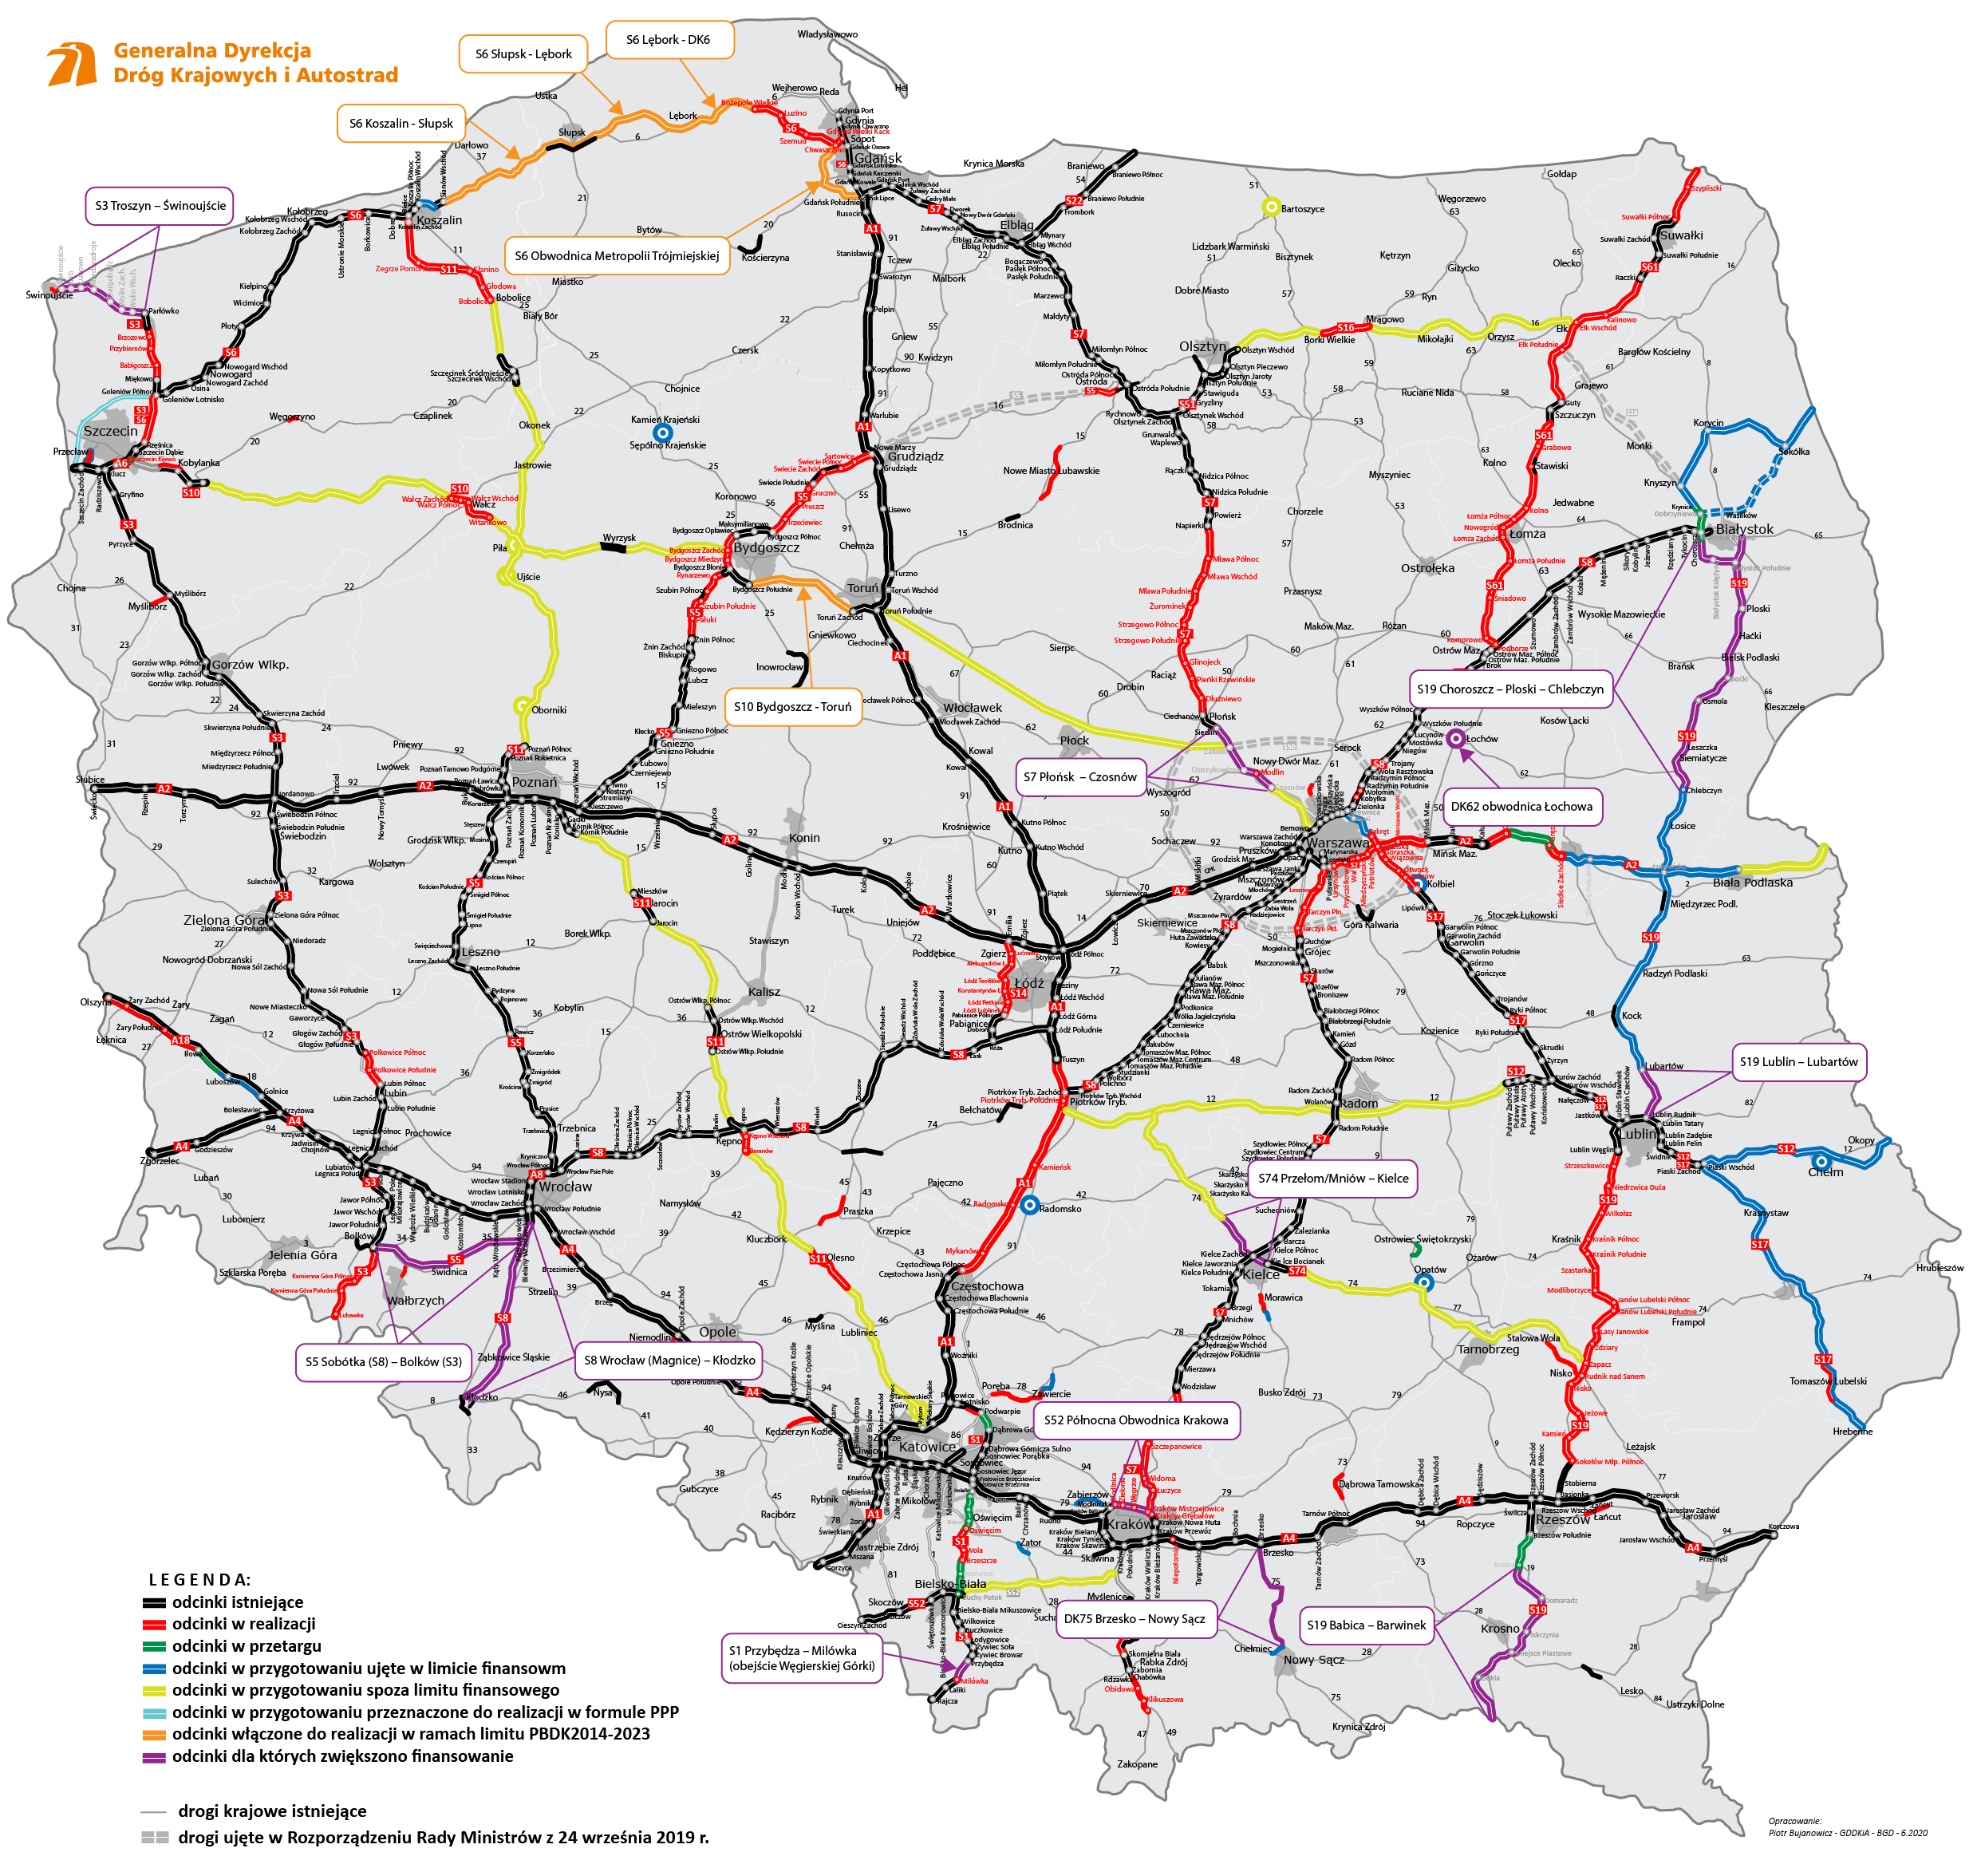 Mapa Polski z dodatkowym dofinansowaniem Programu Budowy Dróg Krajowych 2022-25